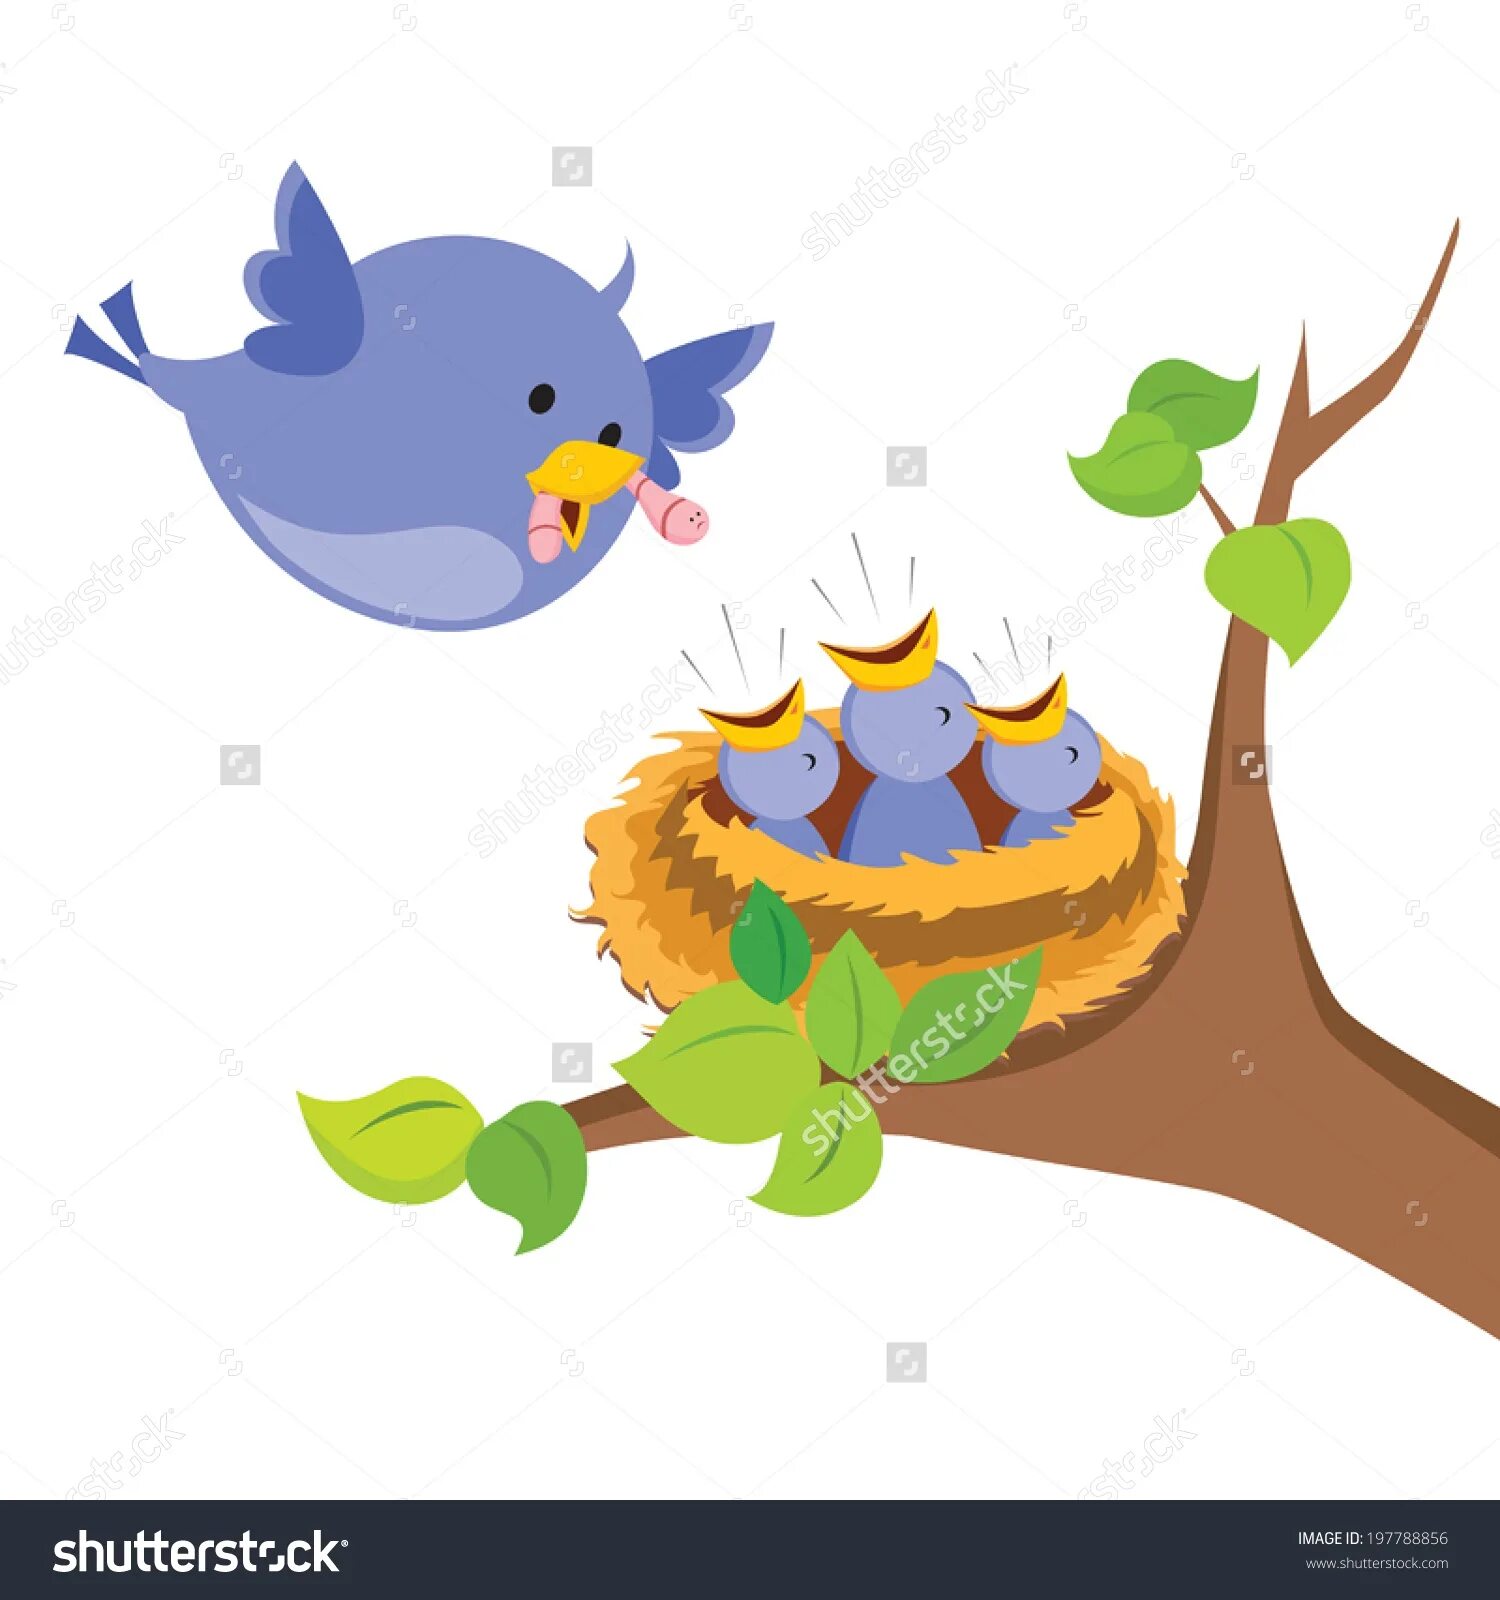 Птенцы в гнезде для детей. Птица с птенцами в гнезде для малышей. Рисование птицы в гнезде. Птичка с птенцами в гнезде рисование для детей.